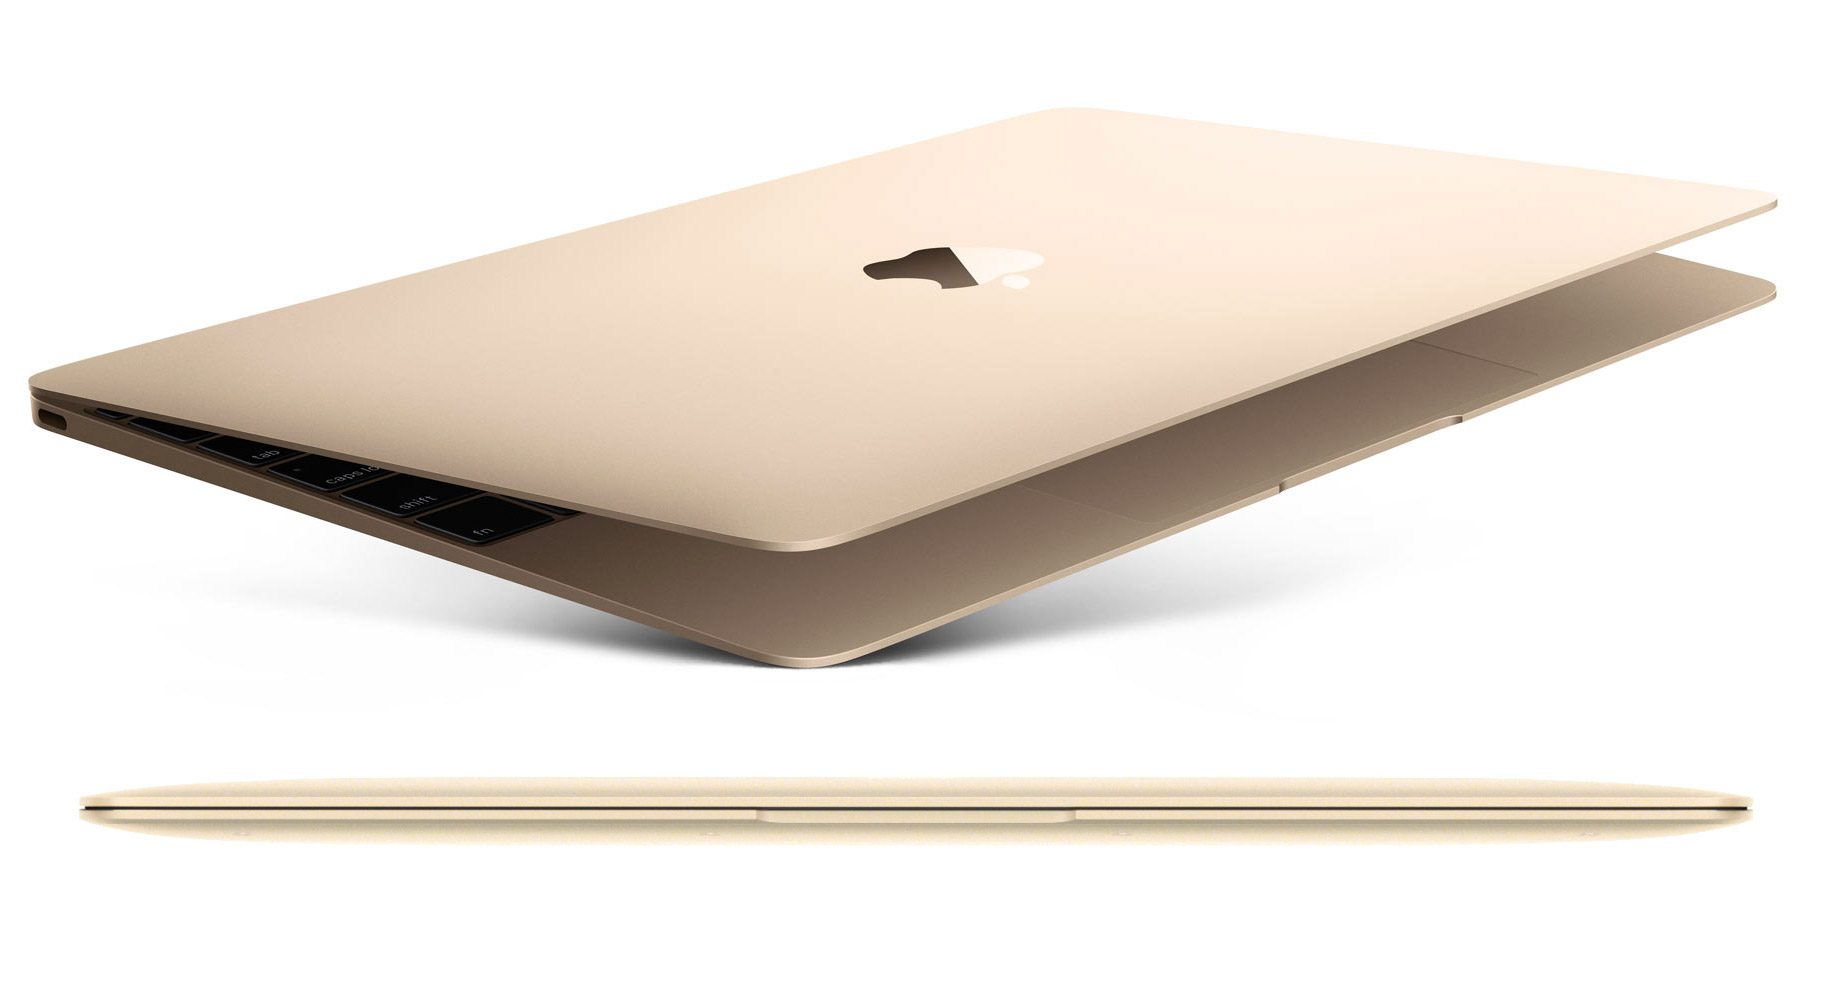 Få den bästa konfigurationen Nya MacBook 2015 online!